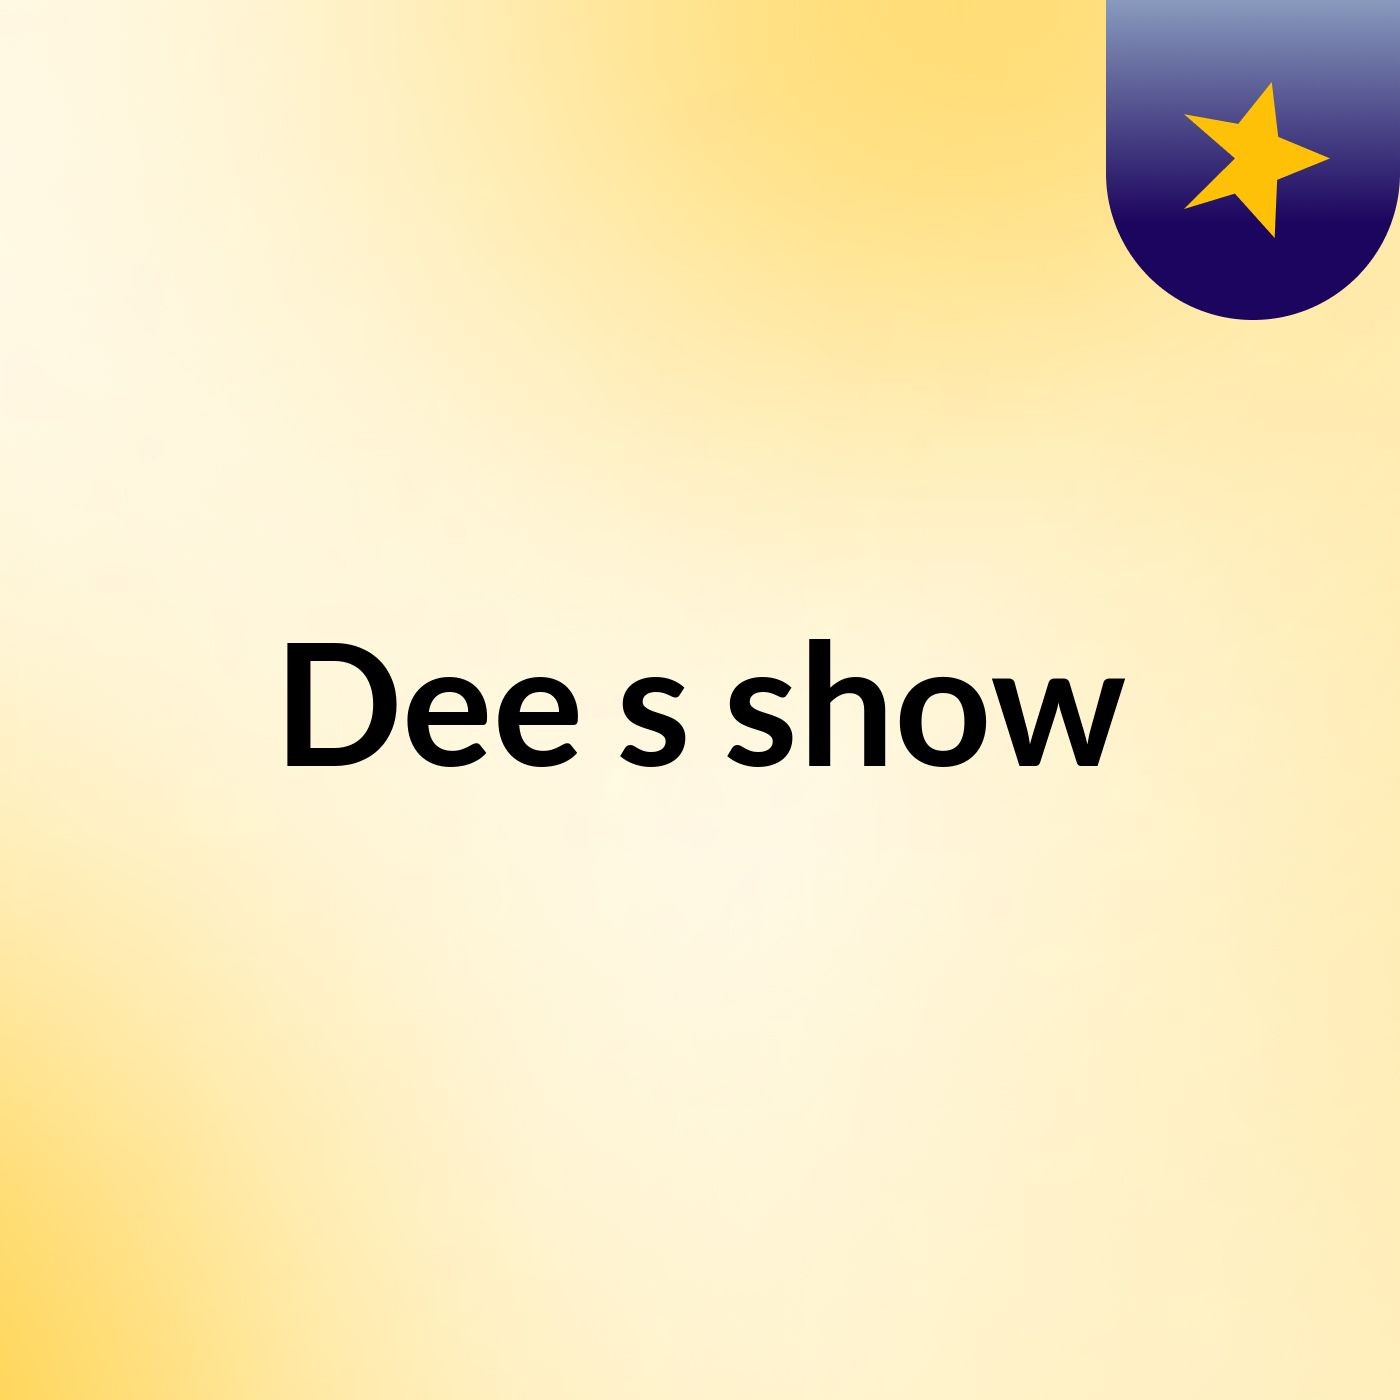 Dee's show